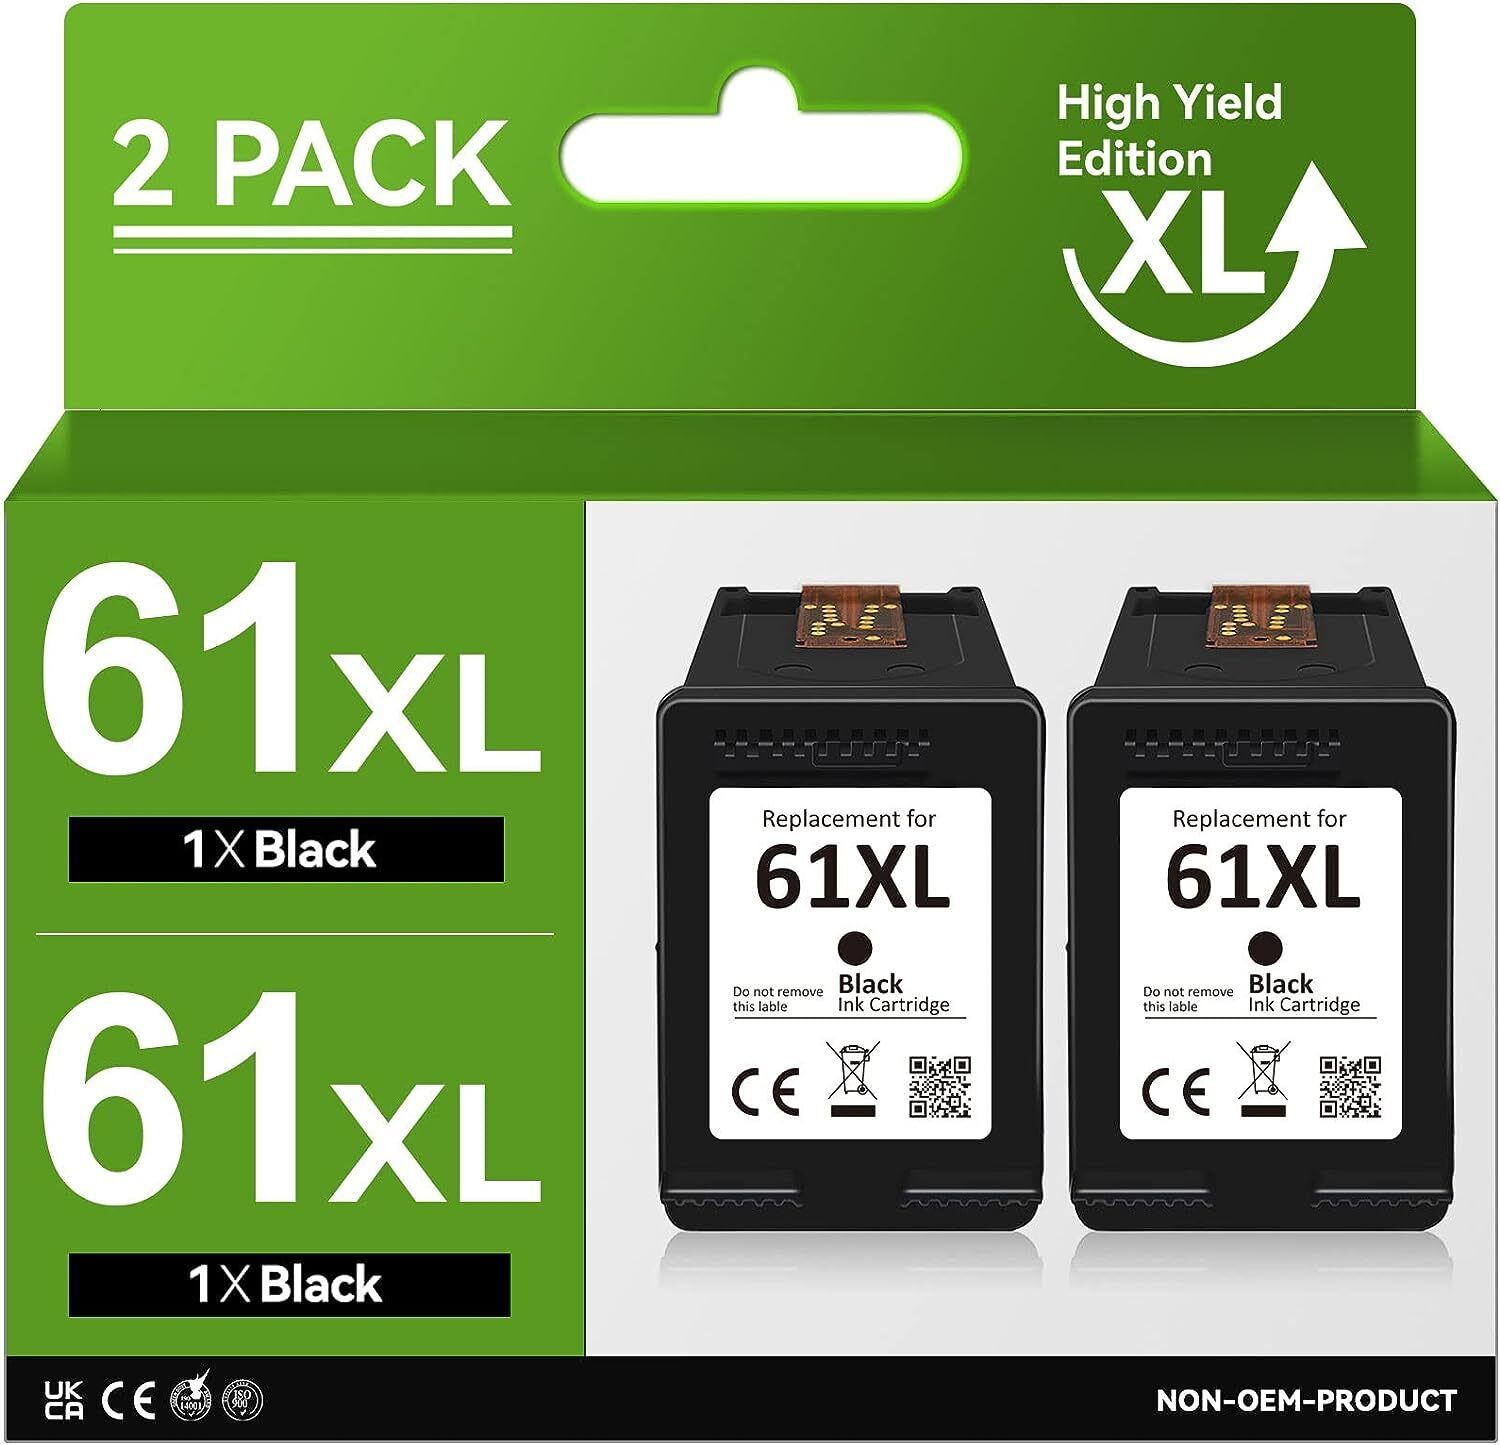 2 Pack 61 XL Black Ink Cartridges for HP ENVY 4500 4501 4502 4504 5530 5531 5535